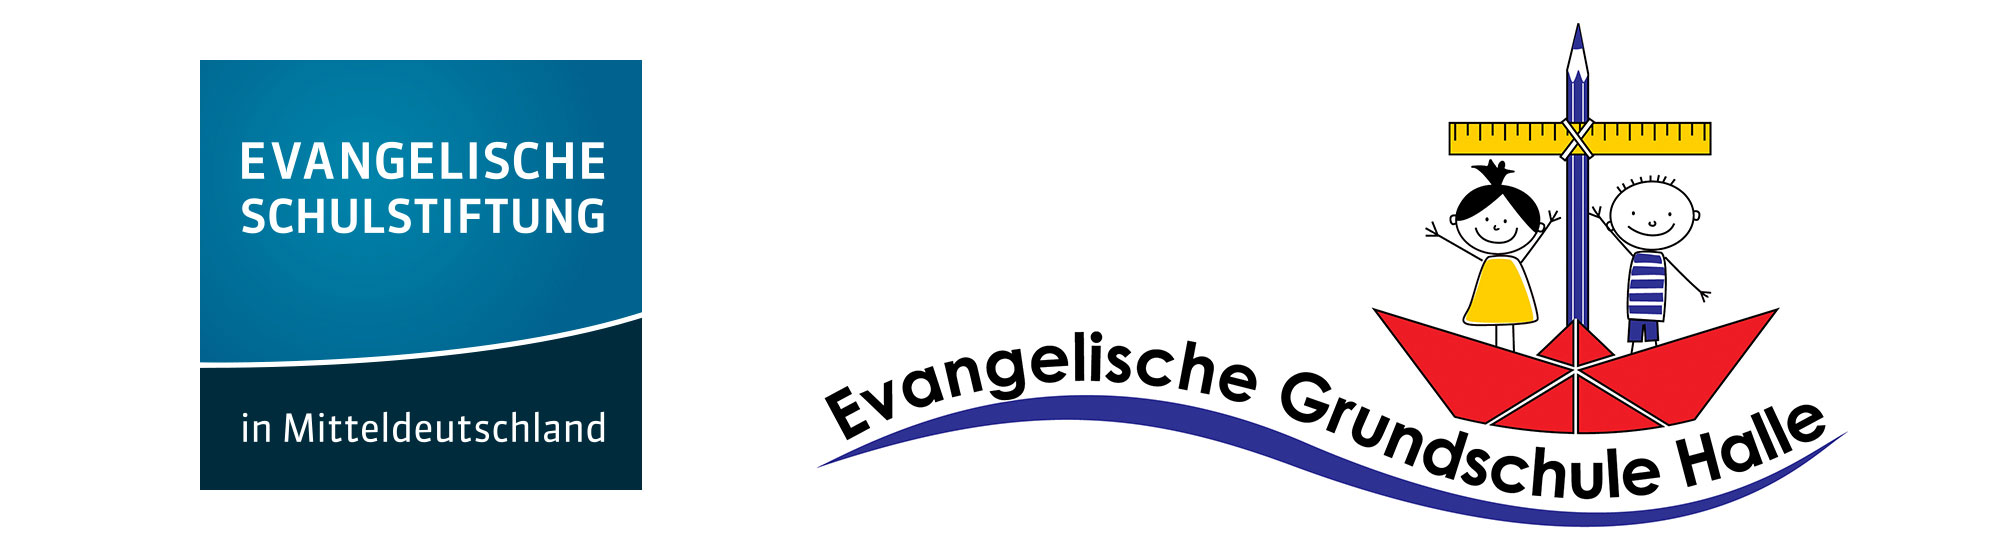 Evangelische Grundschule Halle Trägerin: Evangelische Schulstiftung in Mitteldeutschland